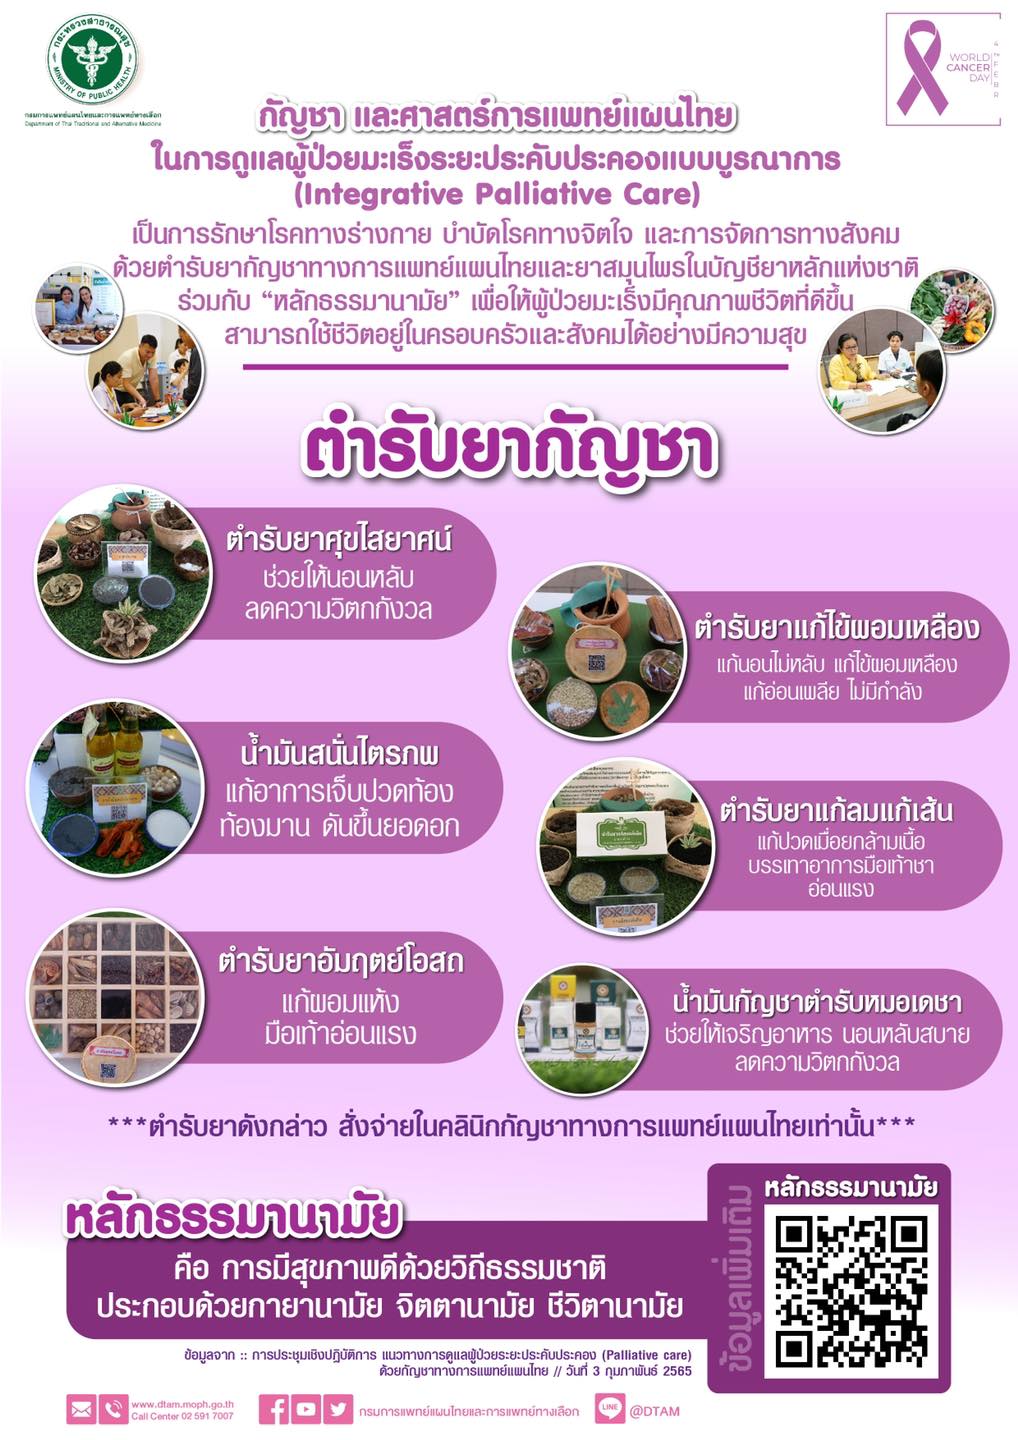 กัญชา และศาสตร์การแพทย์แผนไทย